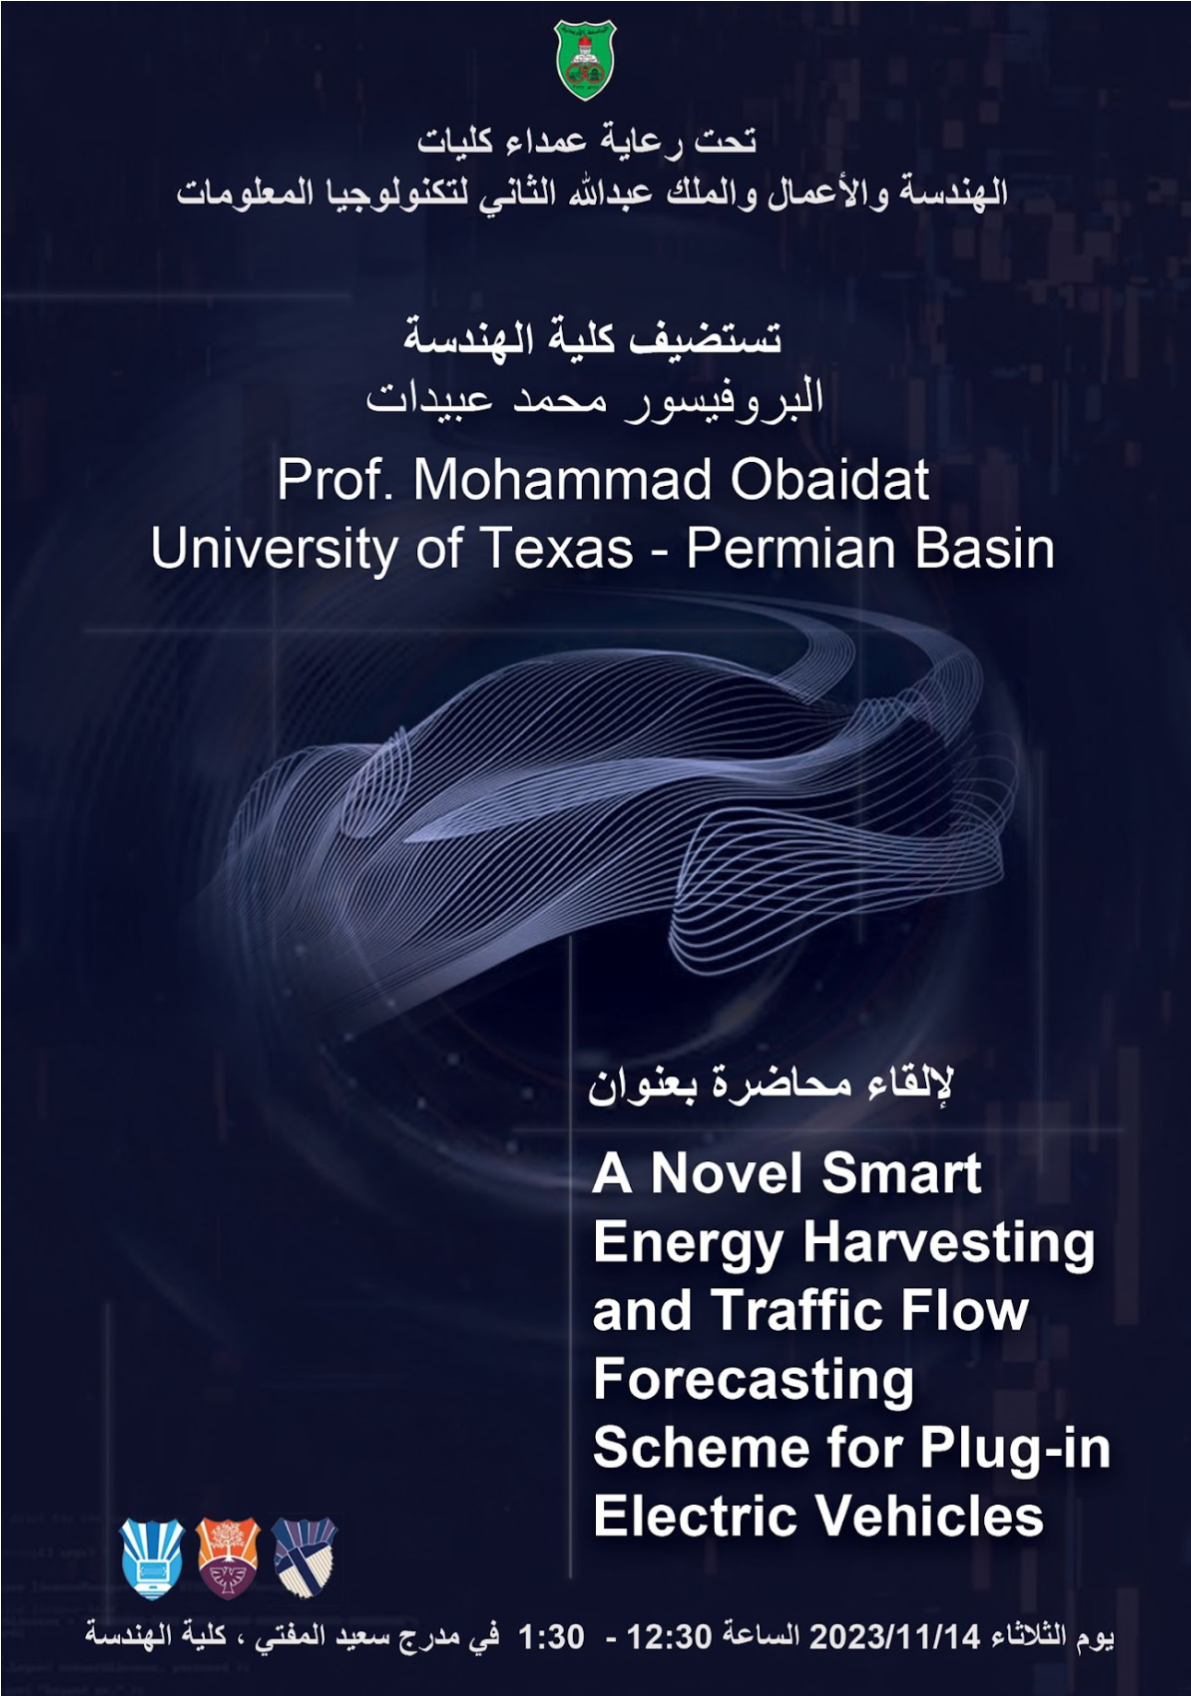 talk-prof-mohammad-obaidat-01.png